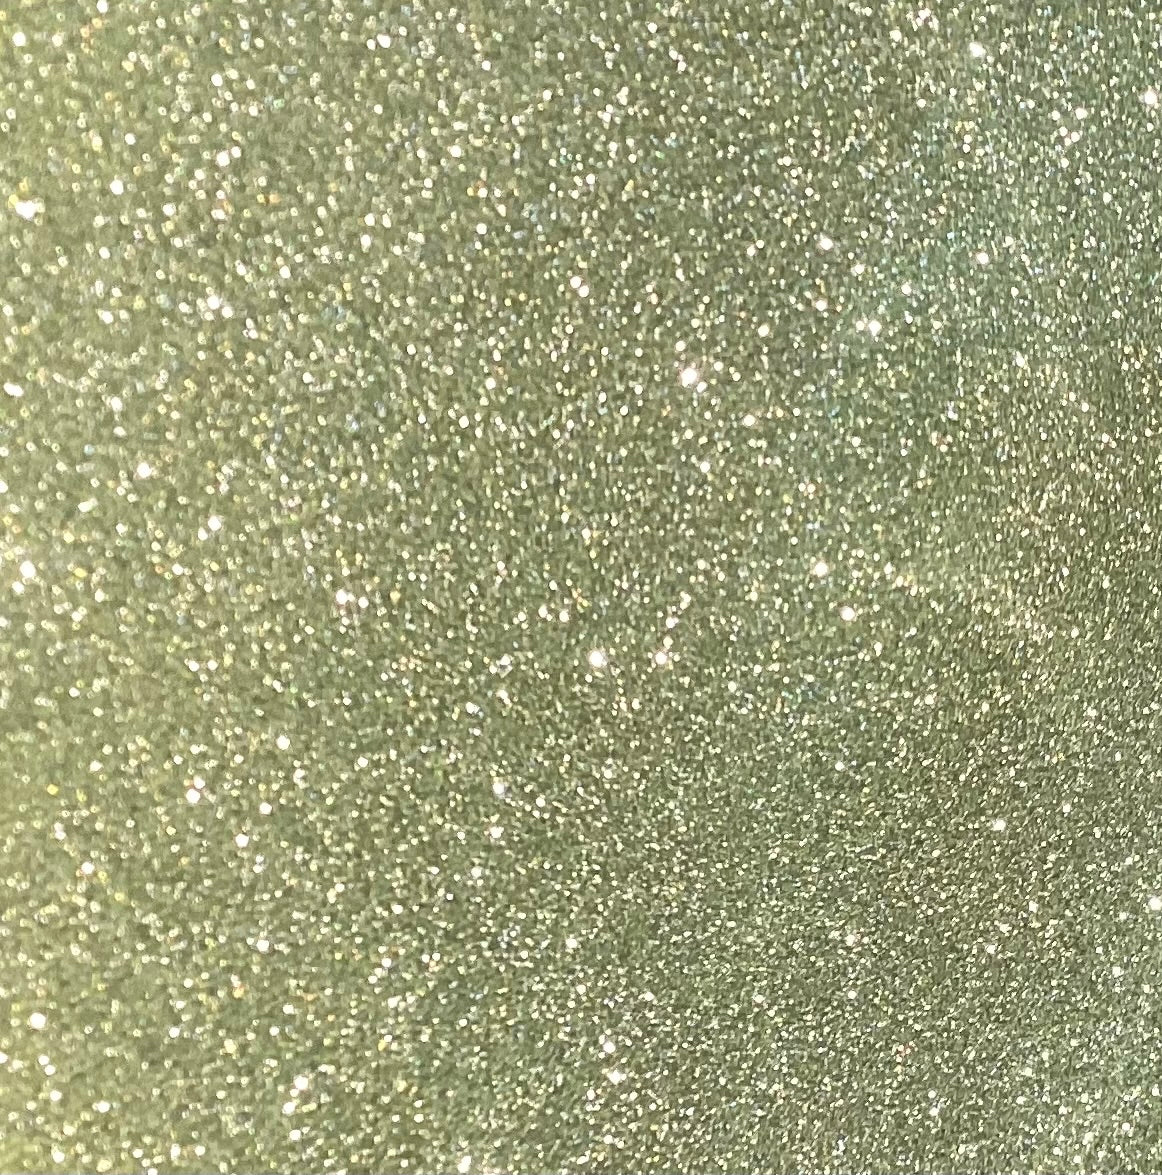 Light Green Reflective Glitter